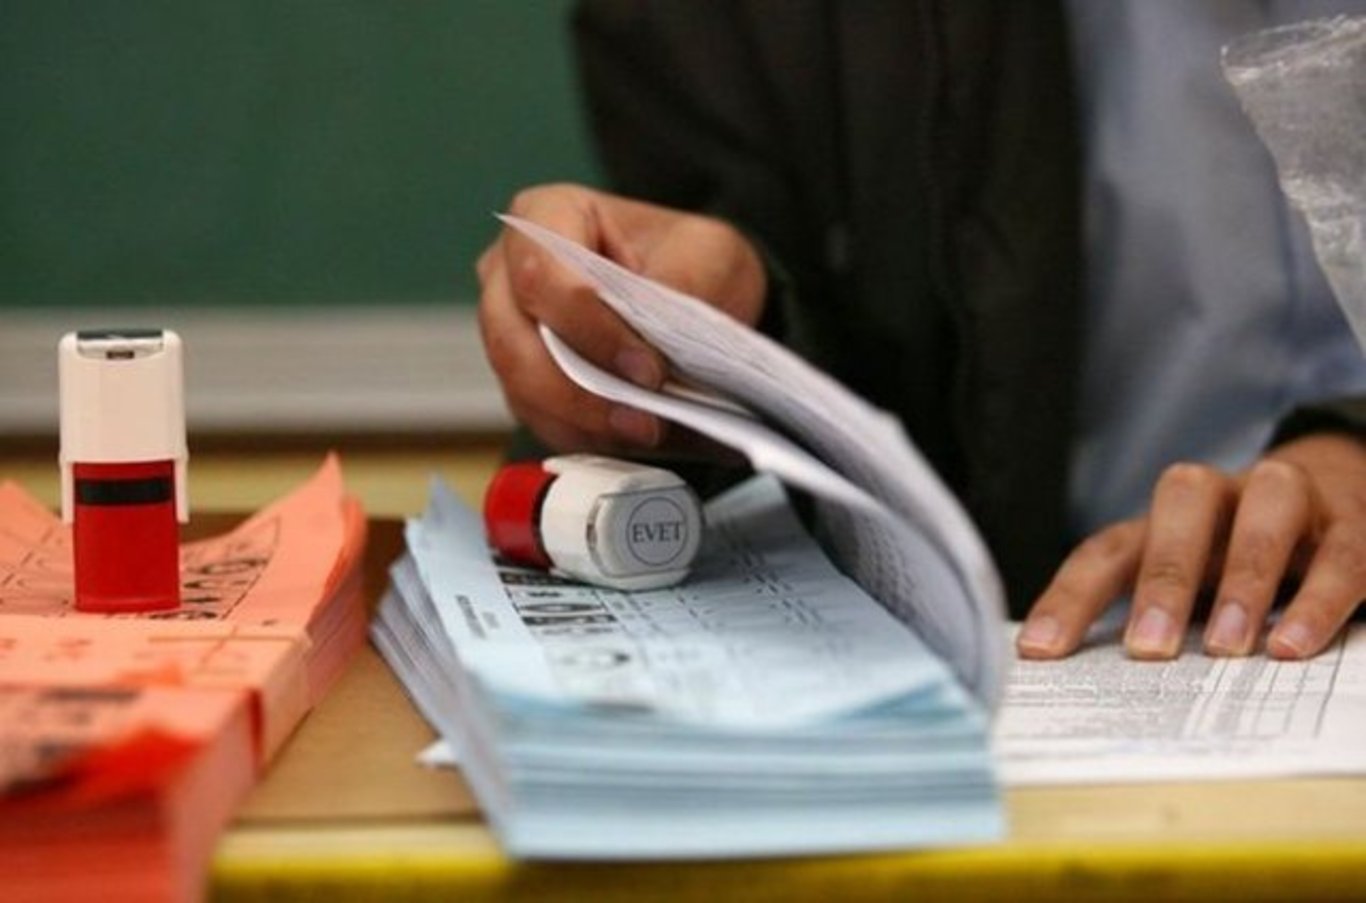 Seçmen kağıdı sorgulama e-Devlet 2023: Seçmen kağıdı olmadan oy verilir mi? Oy kullanırken seçmen kağıdı zorunlumu, gerekli mi?